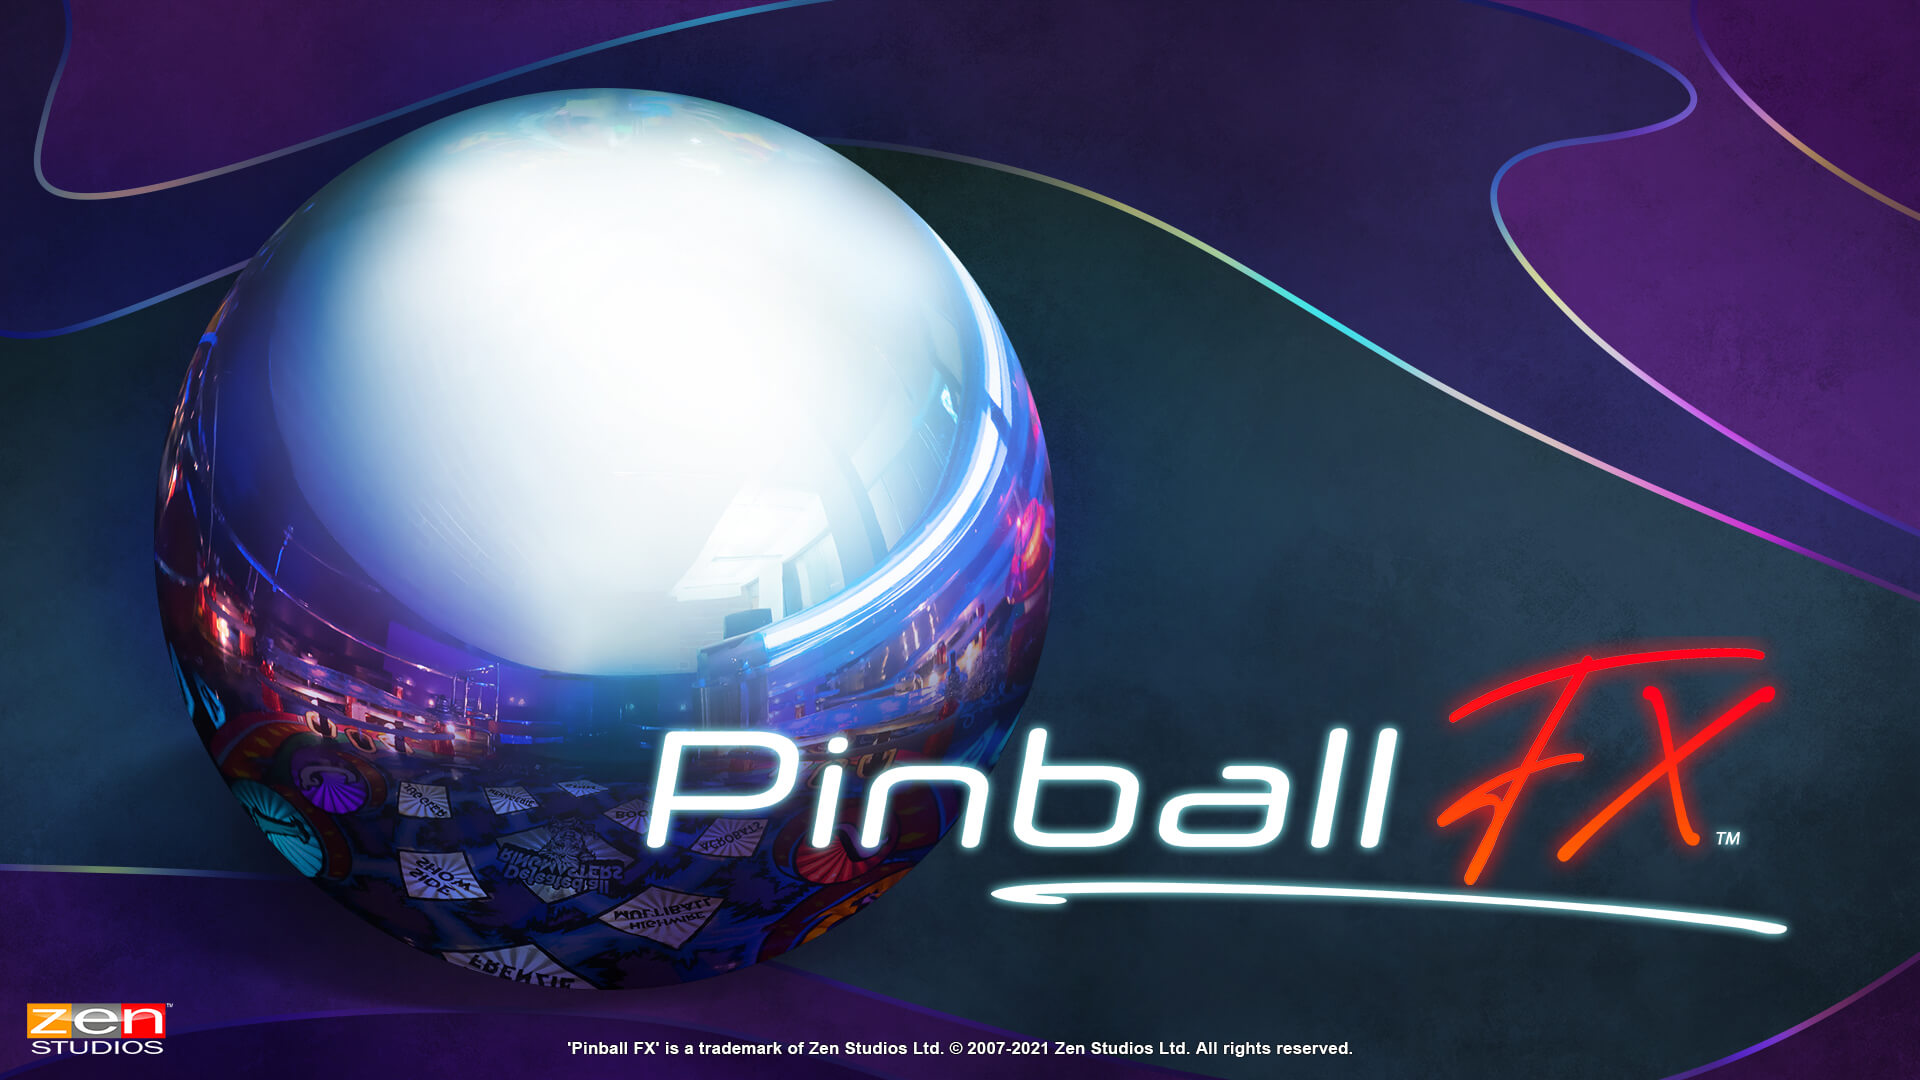 Pinball FX by Zen Studios. Zen Studios Ltd